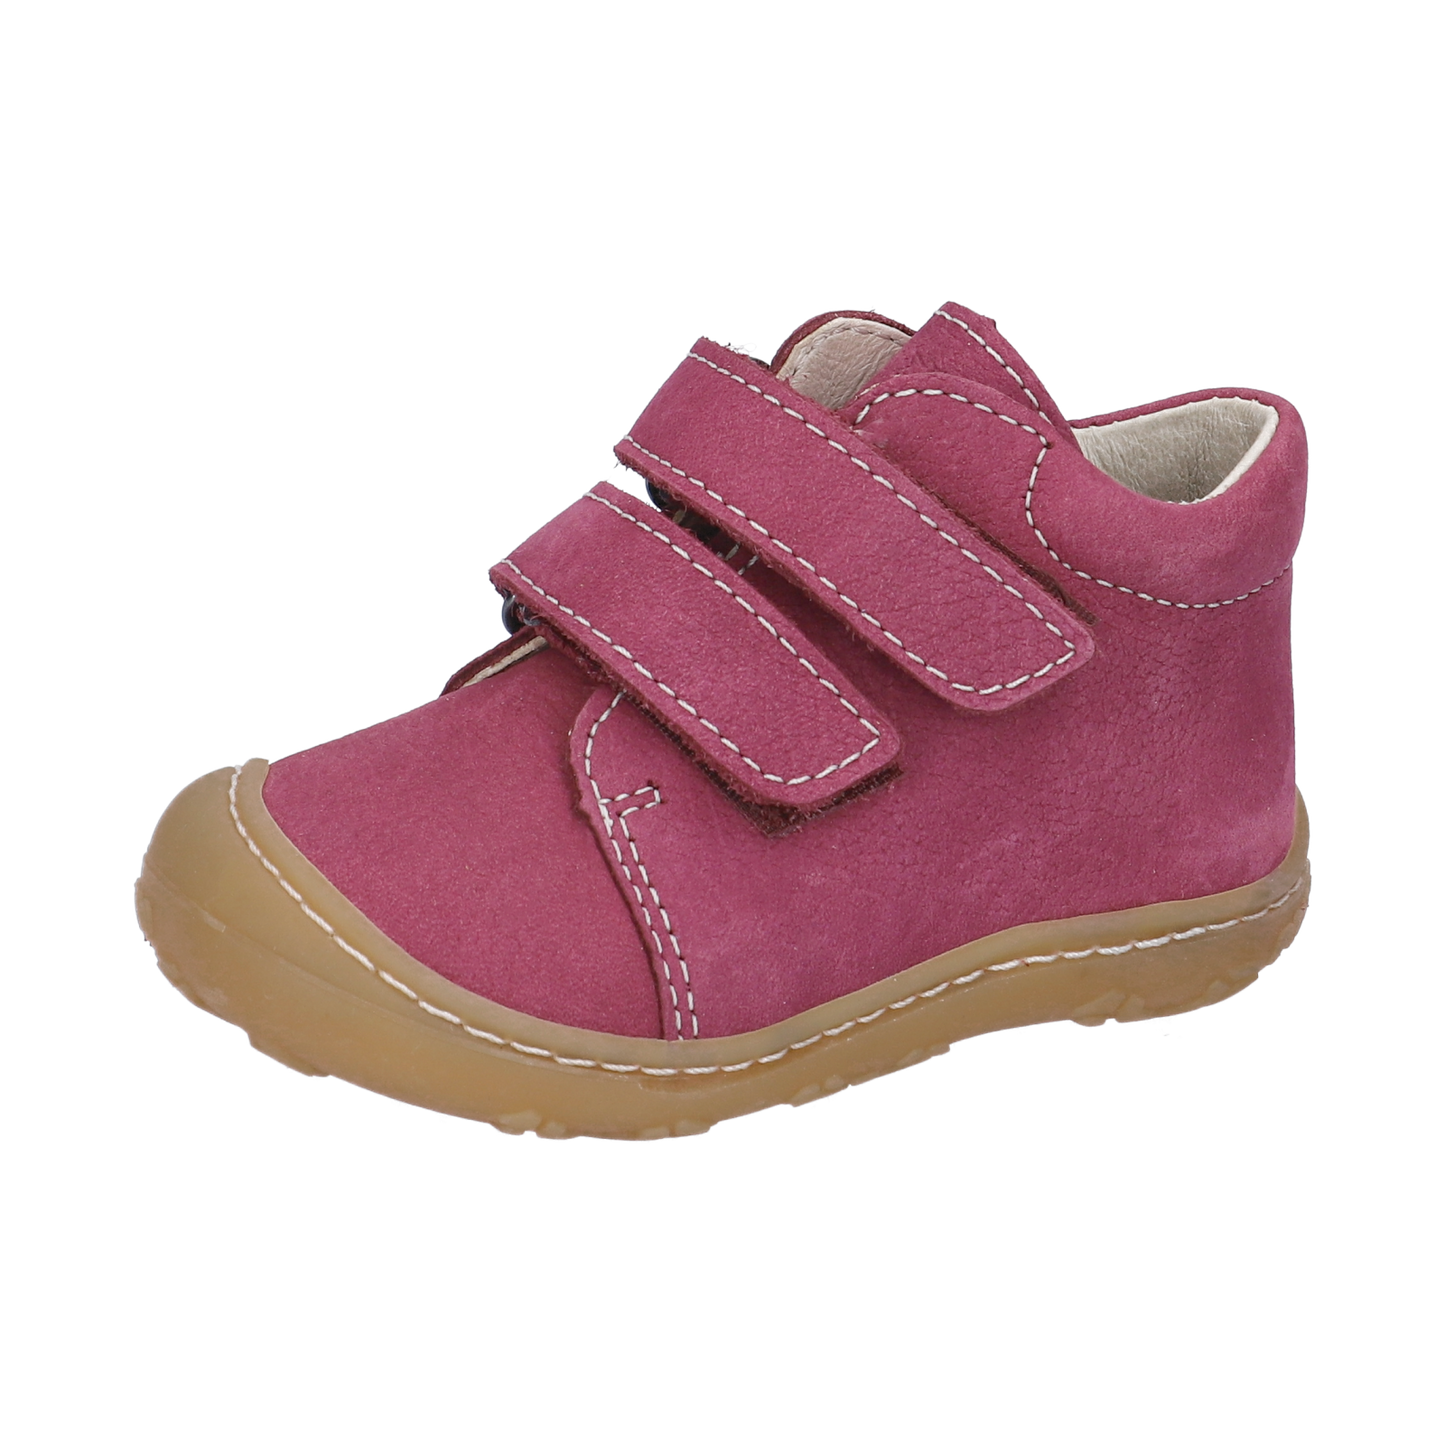 Ricosta Chrisy pink - Kirbys Footwear Ltd